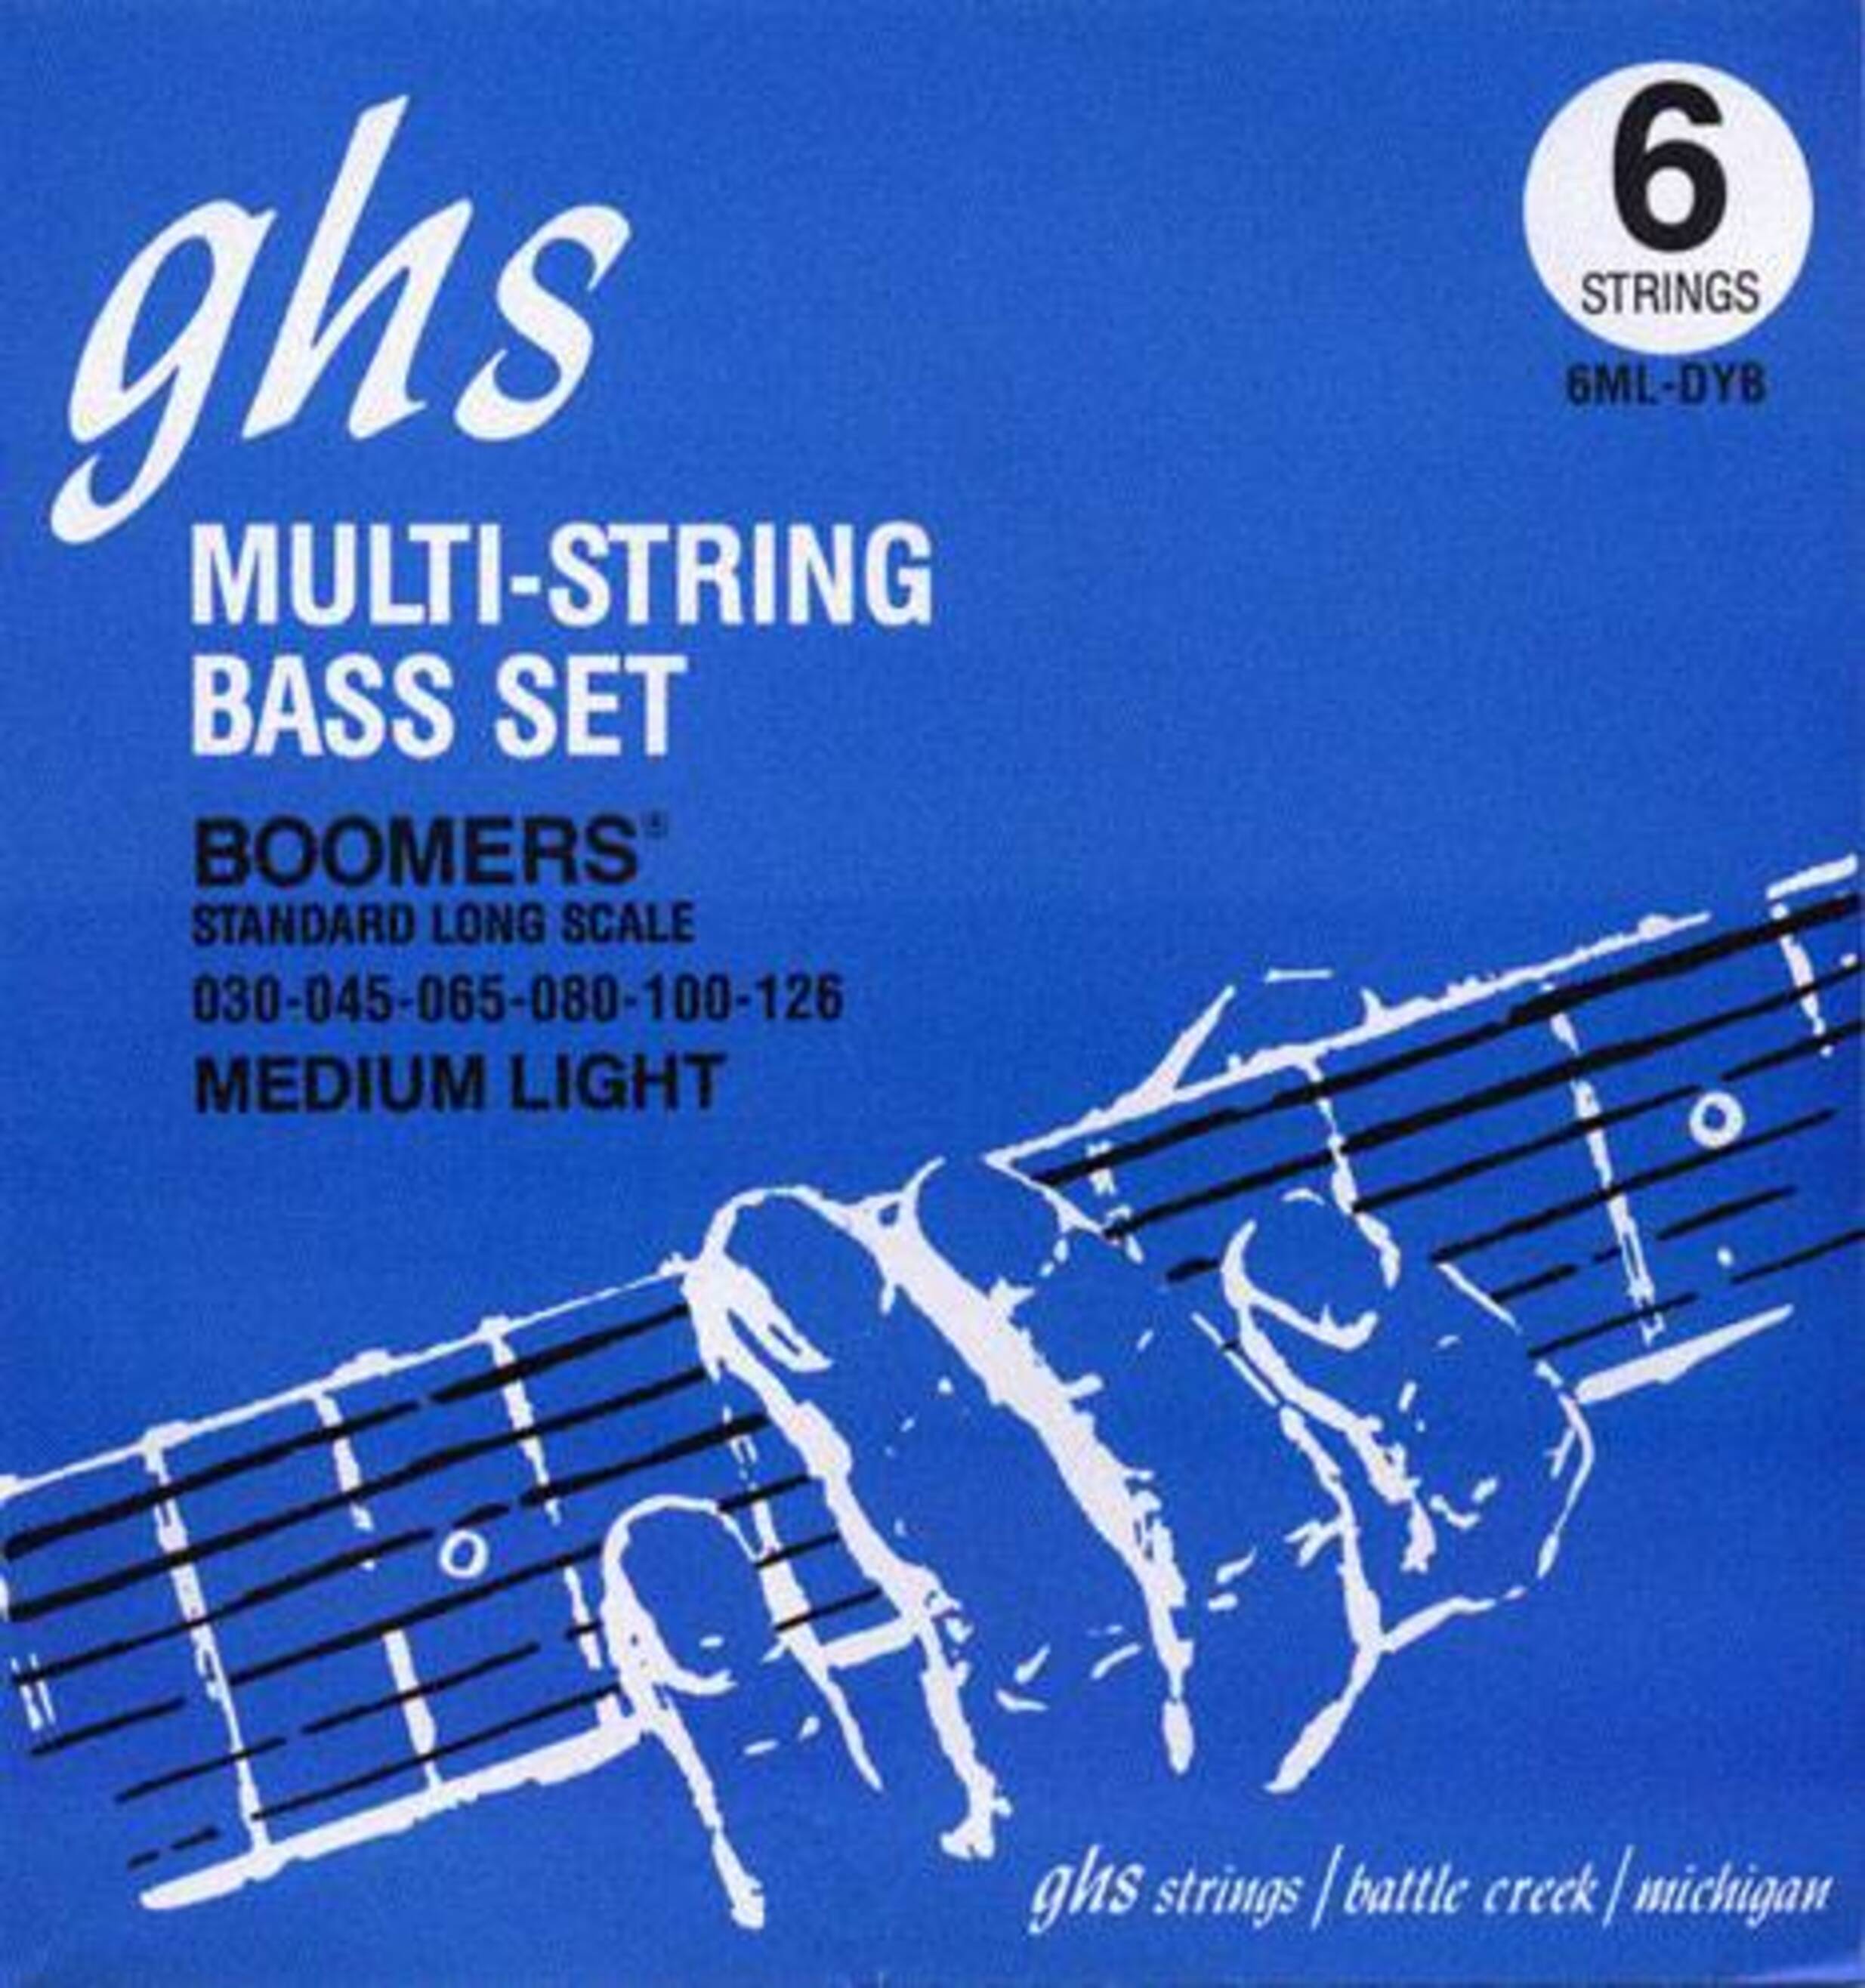 Струны GHS Strings 6ML-DYB гитарные струны mute muter fretboard muting wraps для 6 струнной классической акустической гитары bass